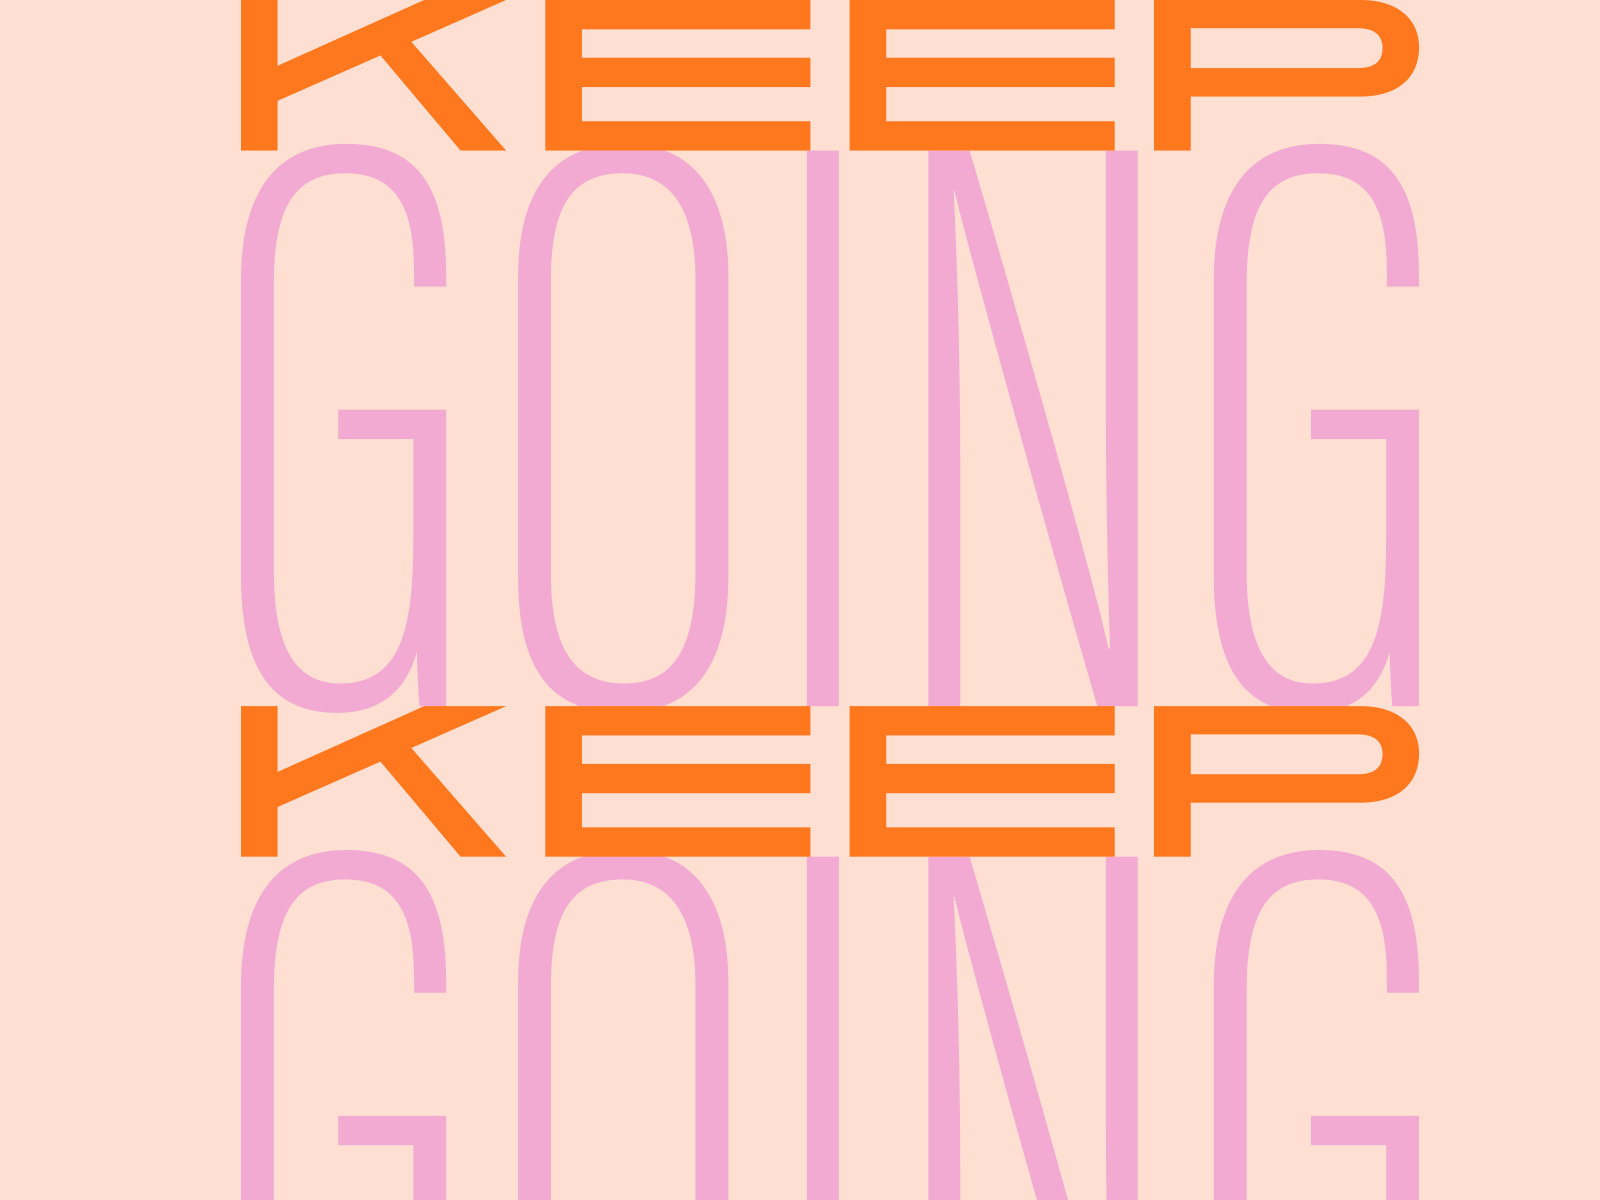 Keep Going animated gif typography